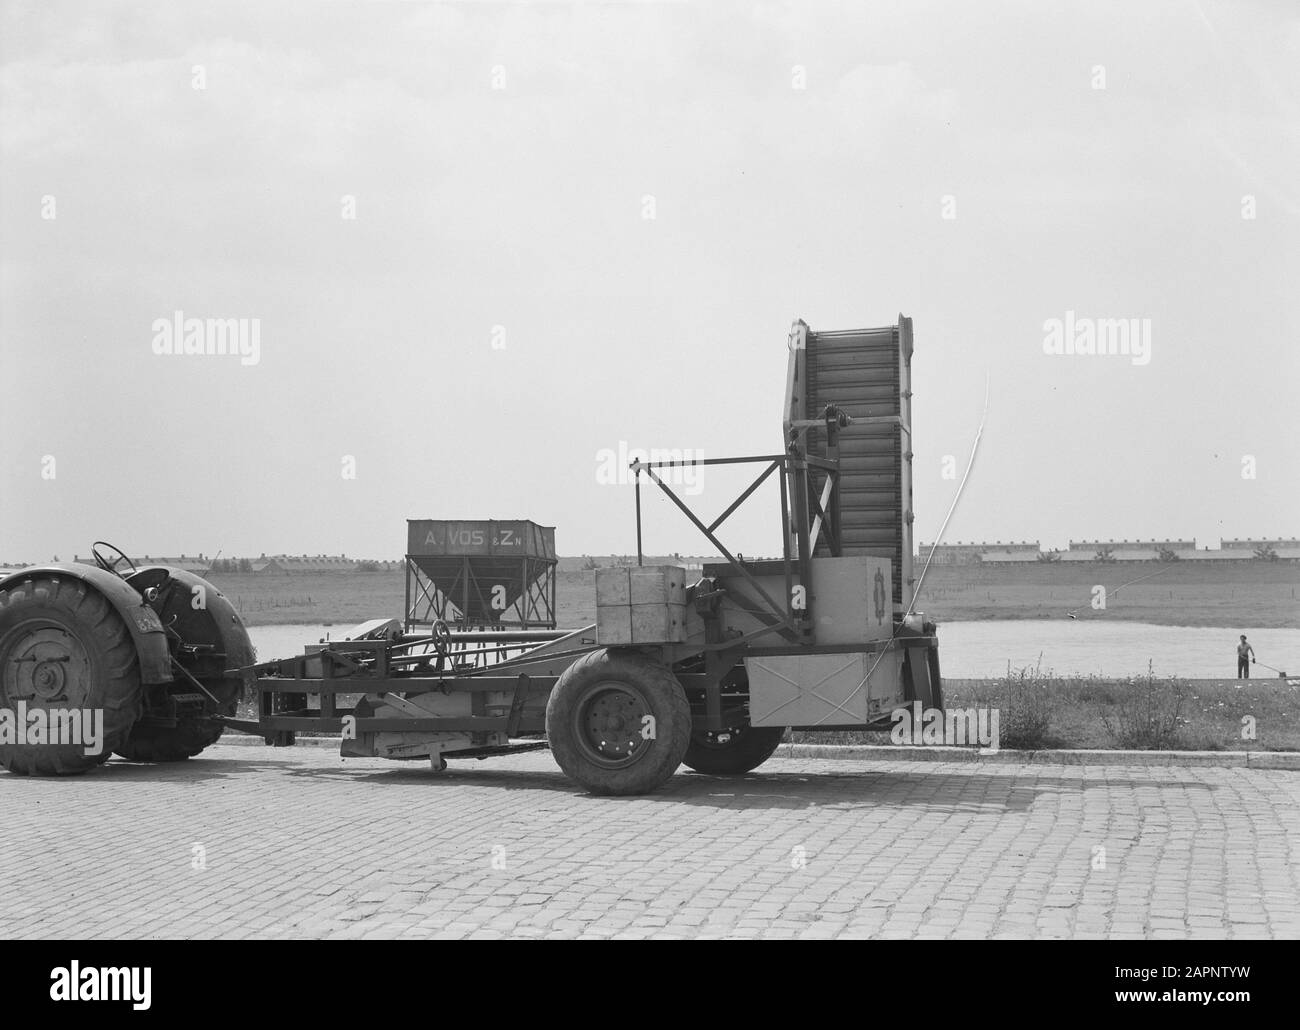 Landmaschinen und Arbeitsgeräte, Arbeiten, Transporter Datum: Juli 1954 Schlagwörter: Landmaschinen und Werkzeuge, Transporter, Arbeit Stockfoto